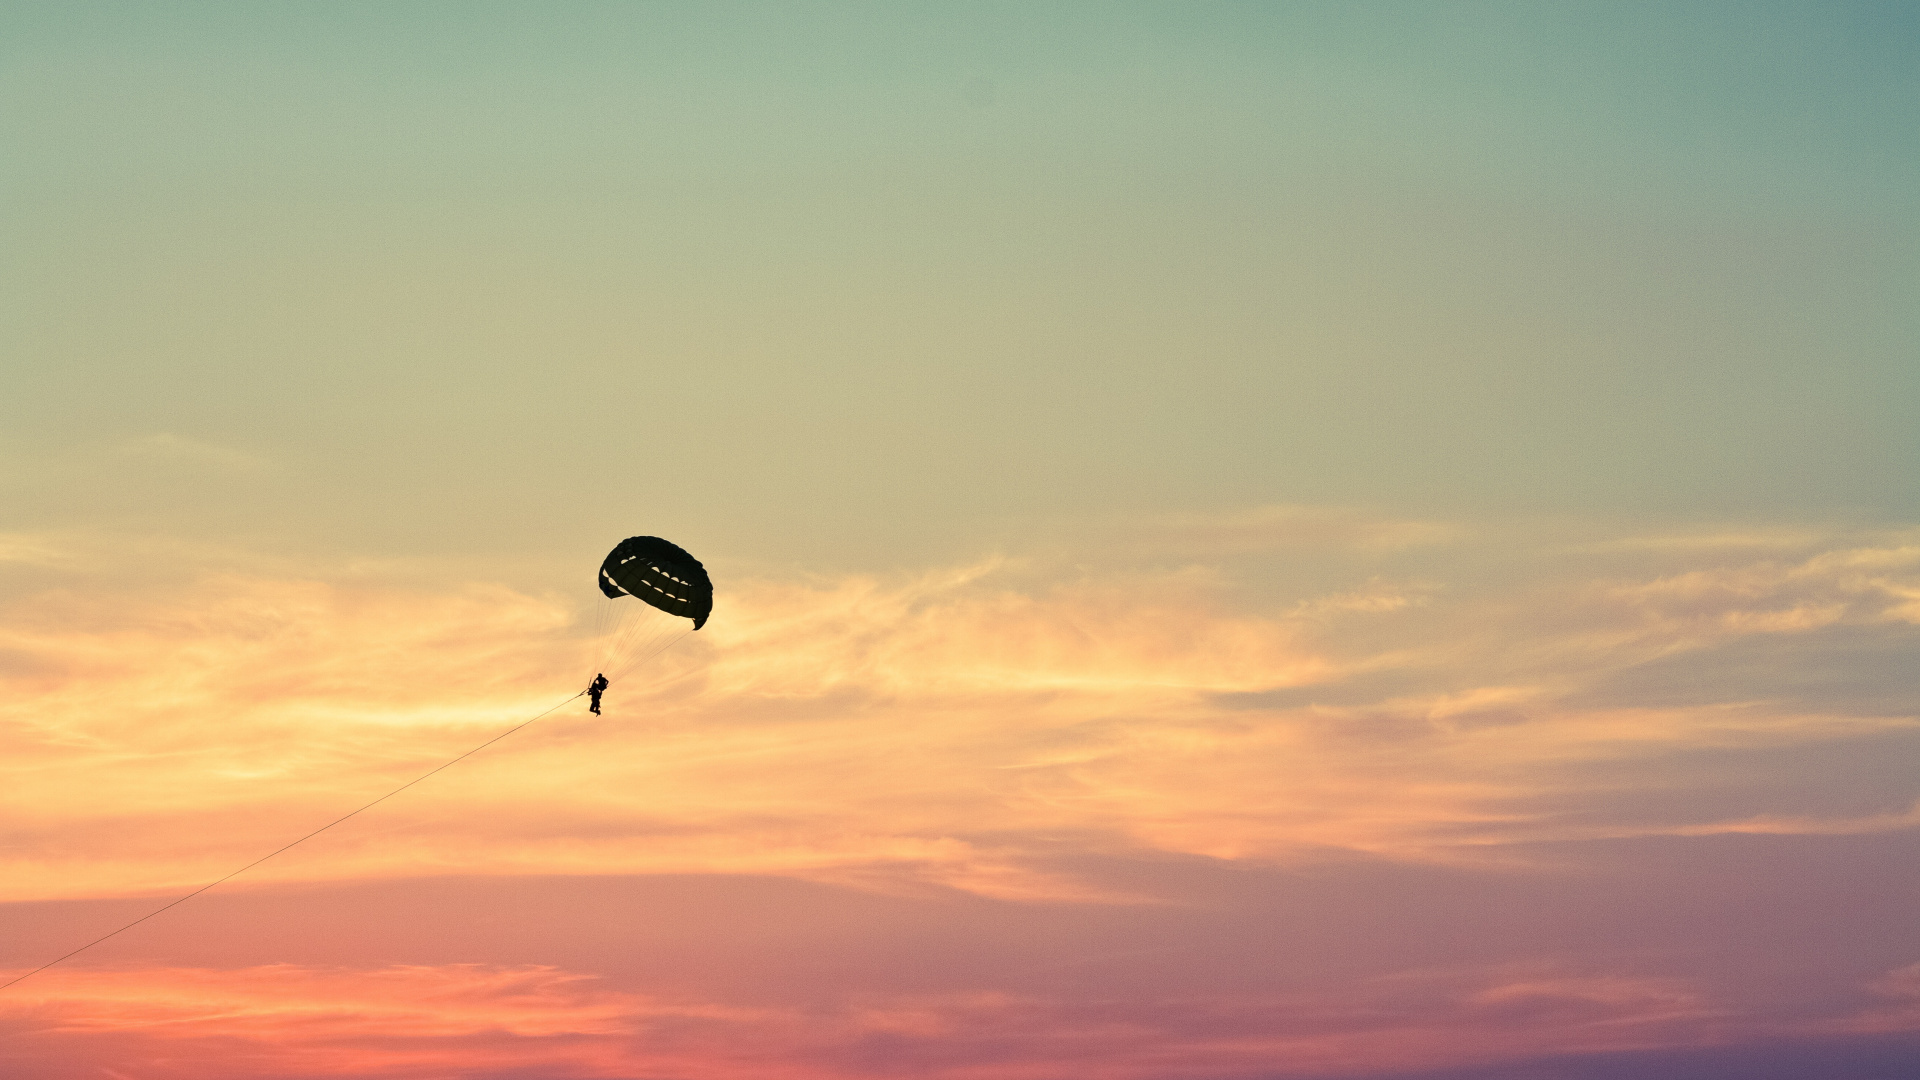 降落伞, 空中运动, 极限运动, 地平线, 伞兵 壁纸 1920x1080 允许